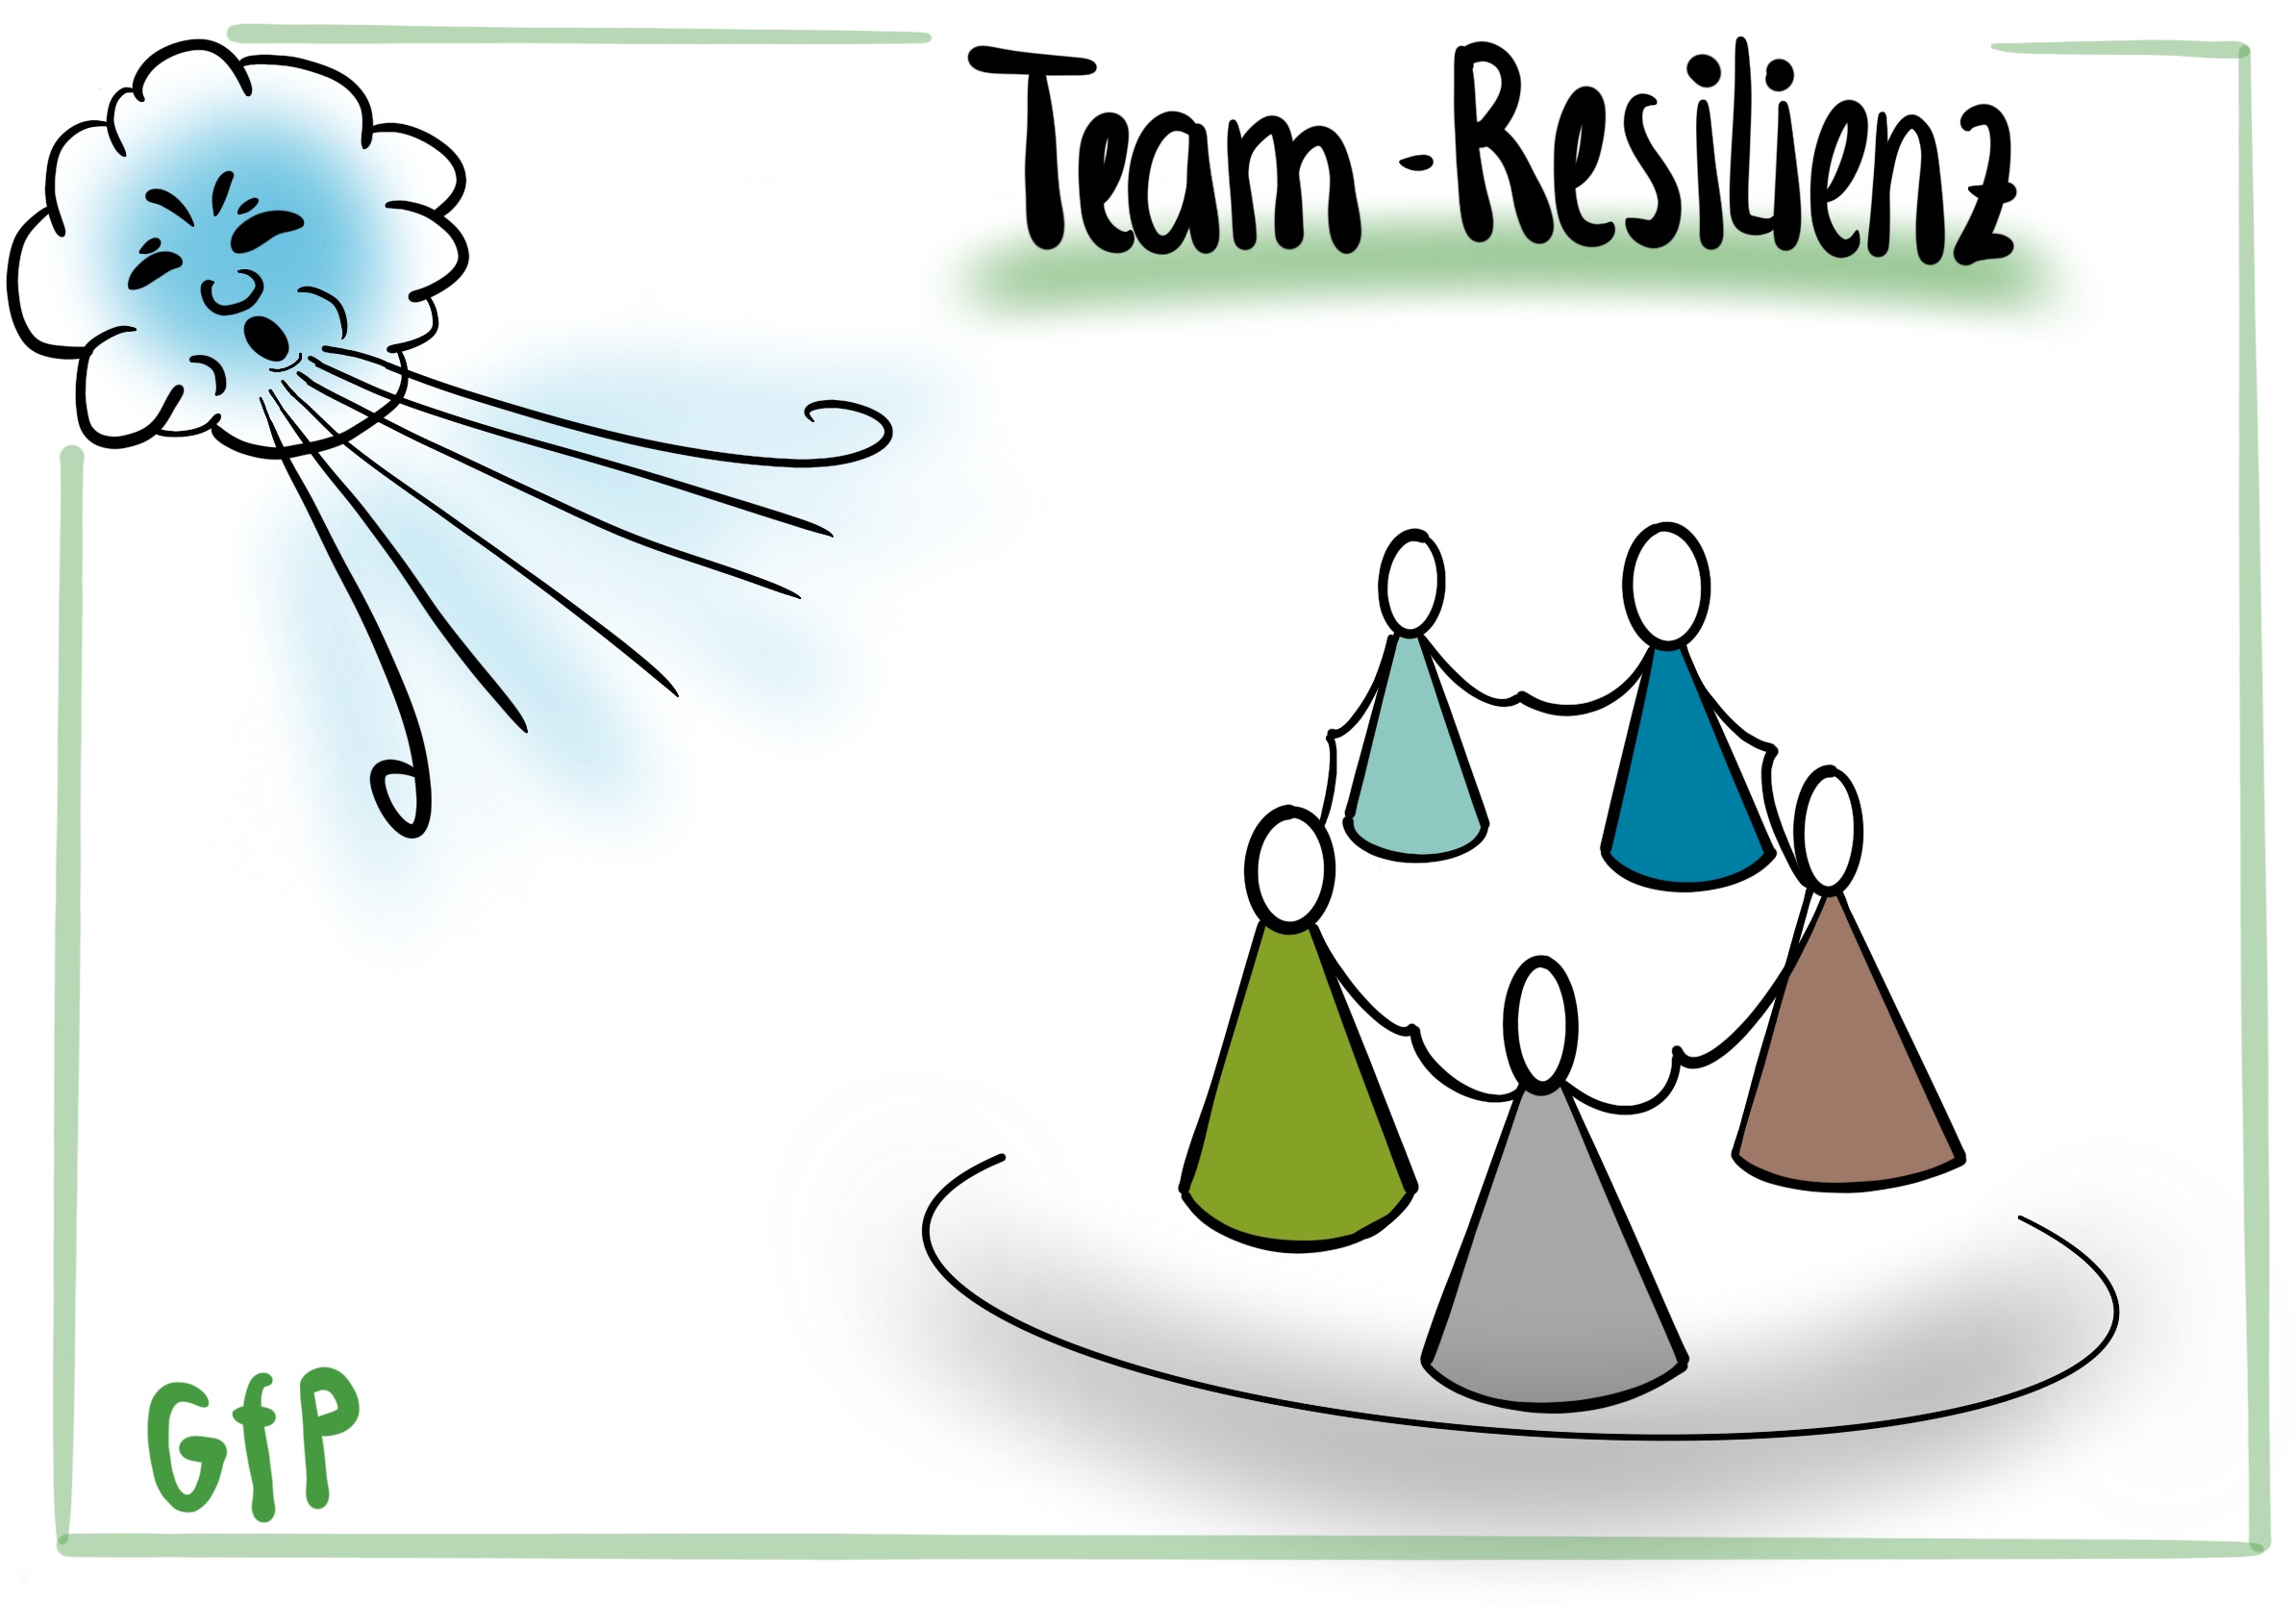 Teamresilienz als Lernchance für Organisationen